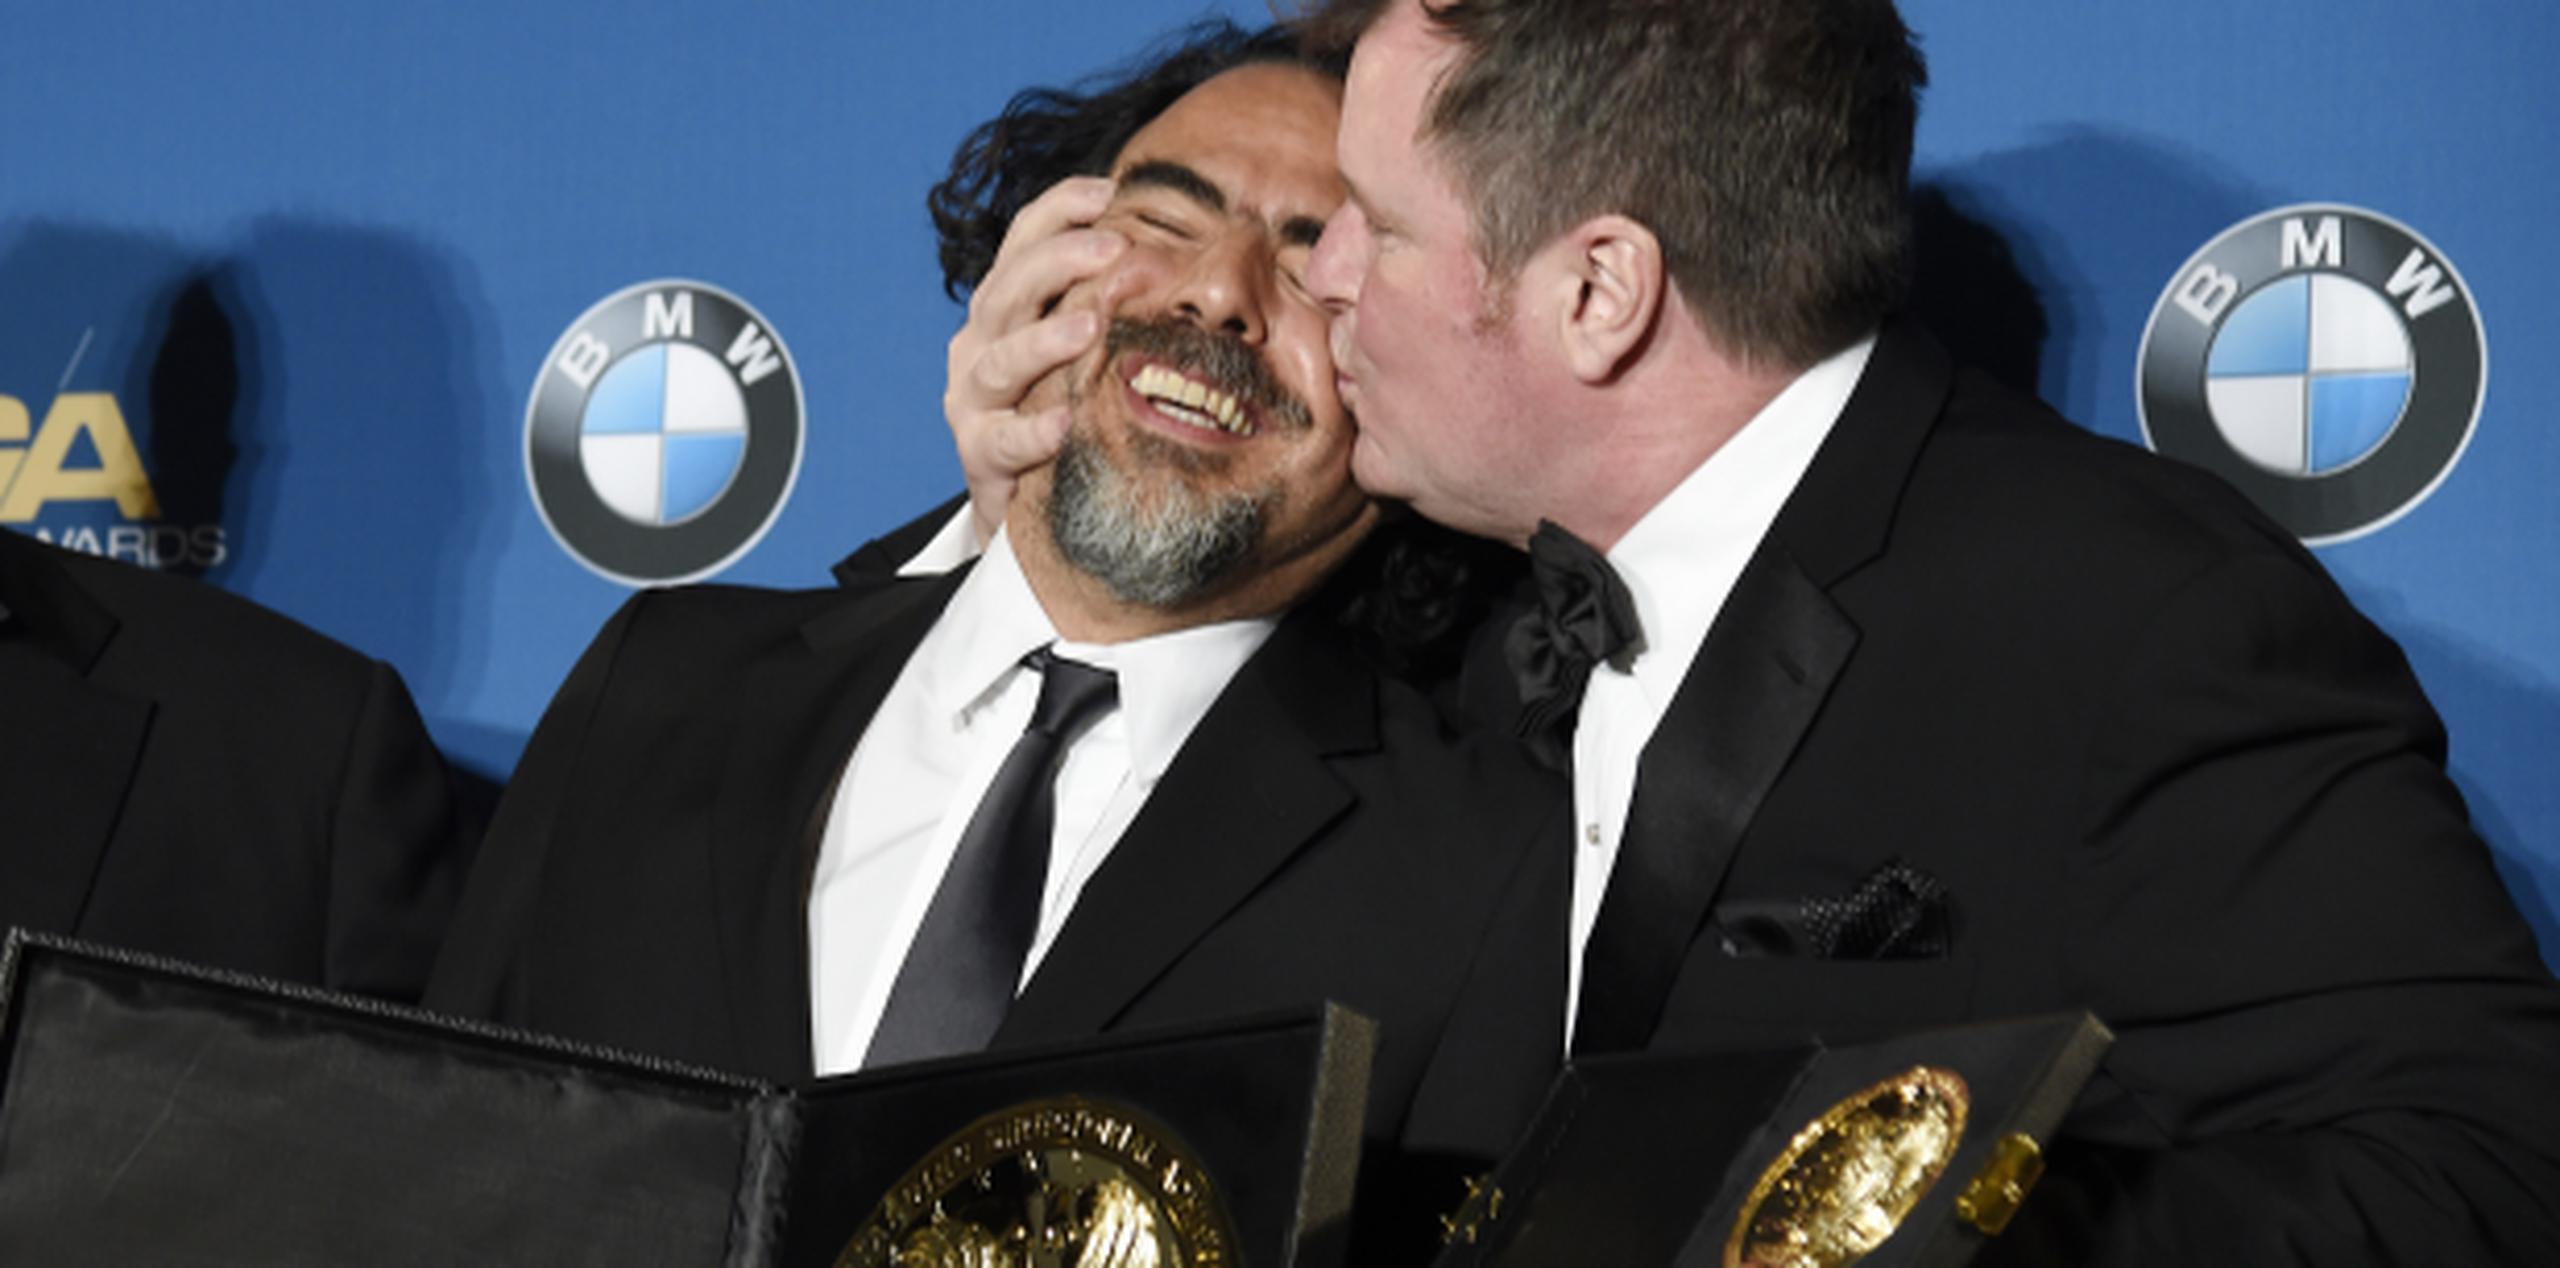 González Iñarritu recibe un beso del productor James Skotchdopole tras ganar otro premio por The Revenant, esta vez del gremio de directores. (AP)